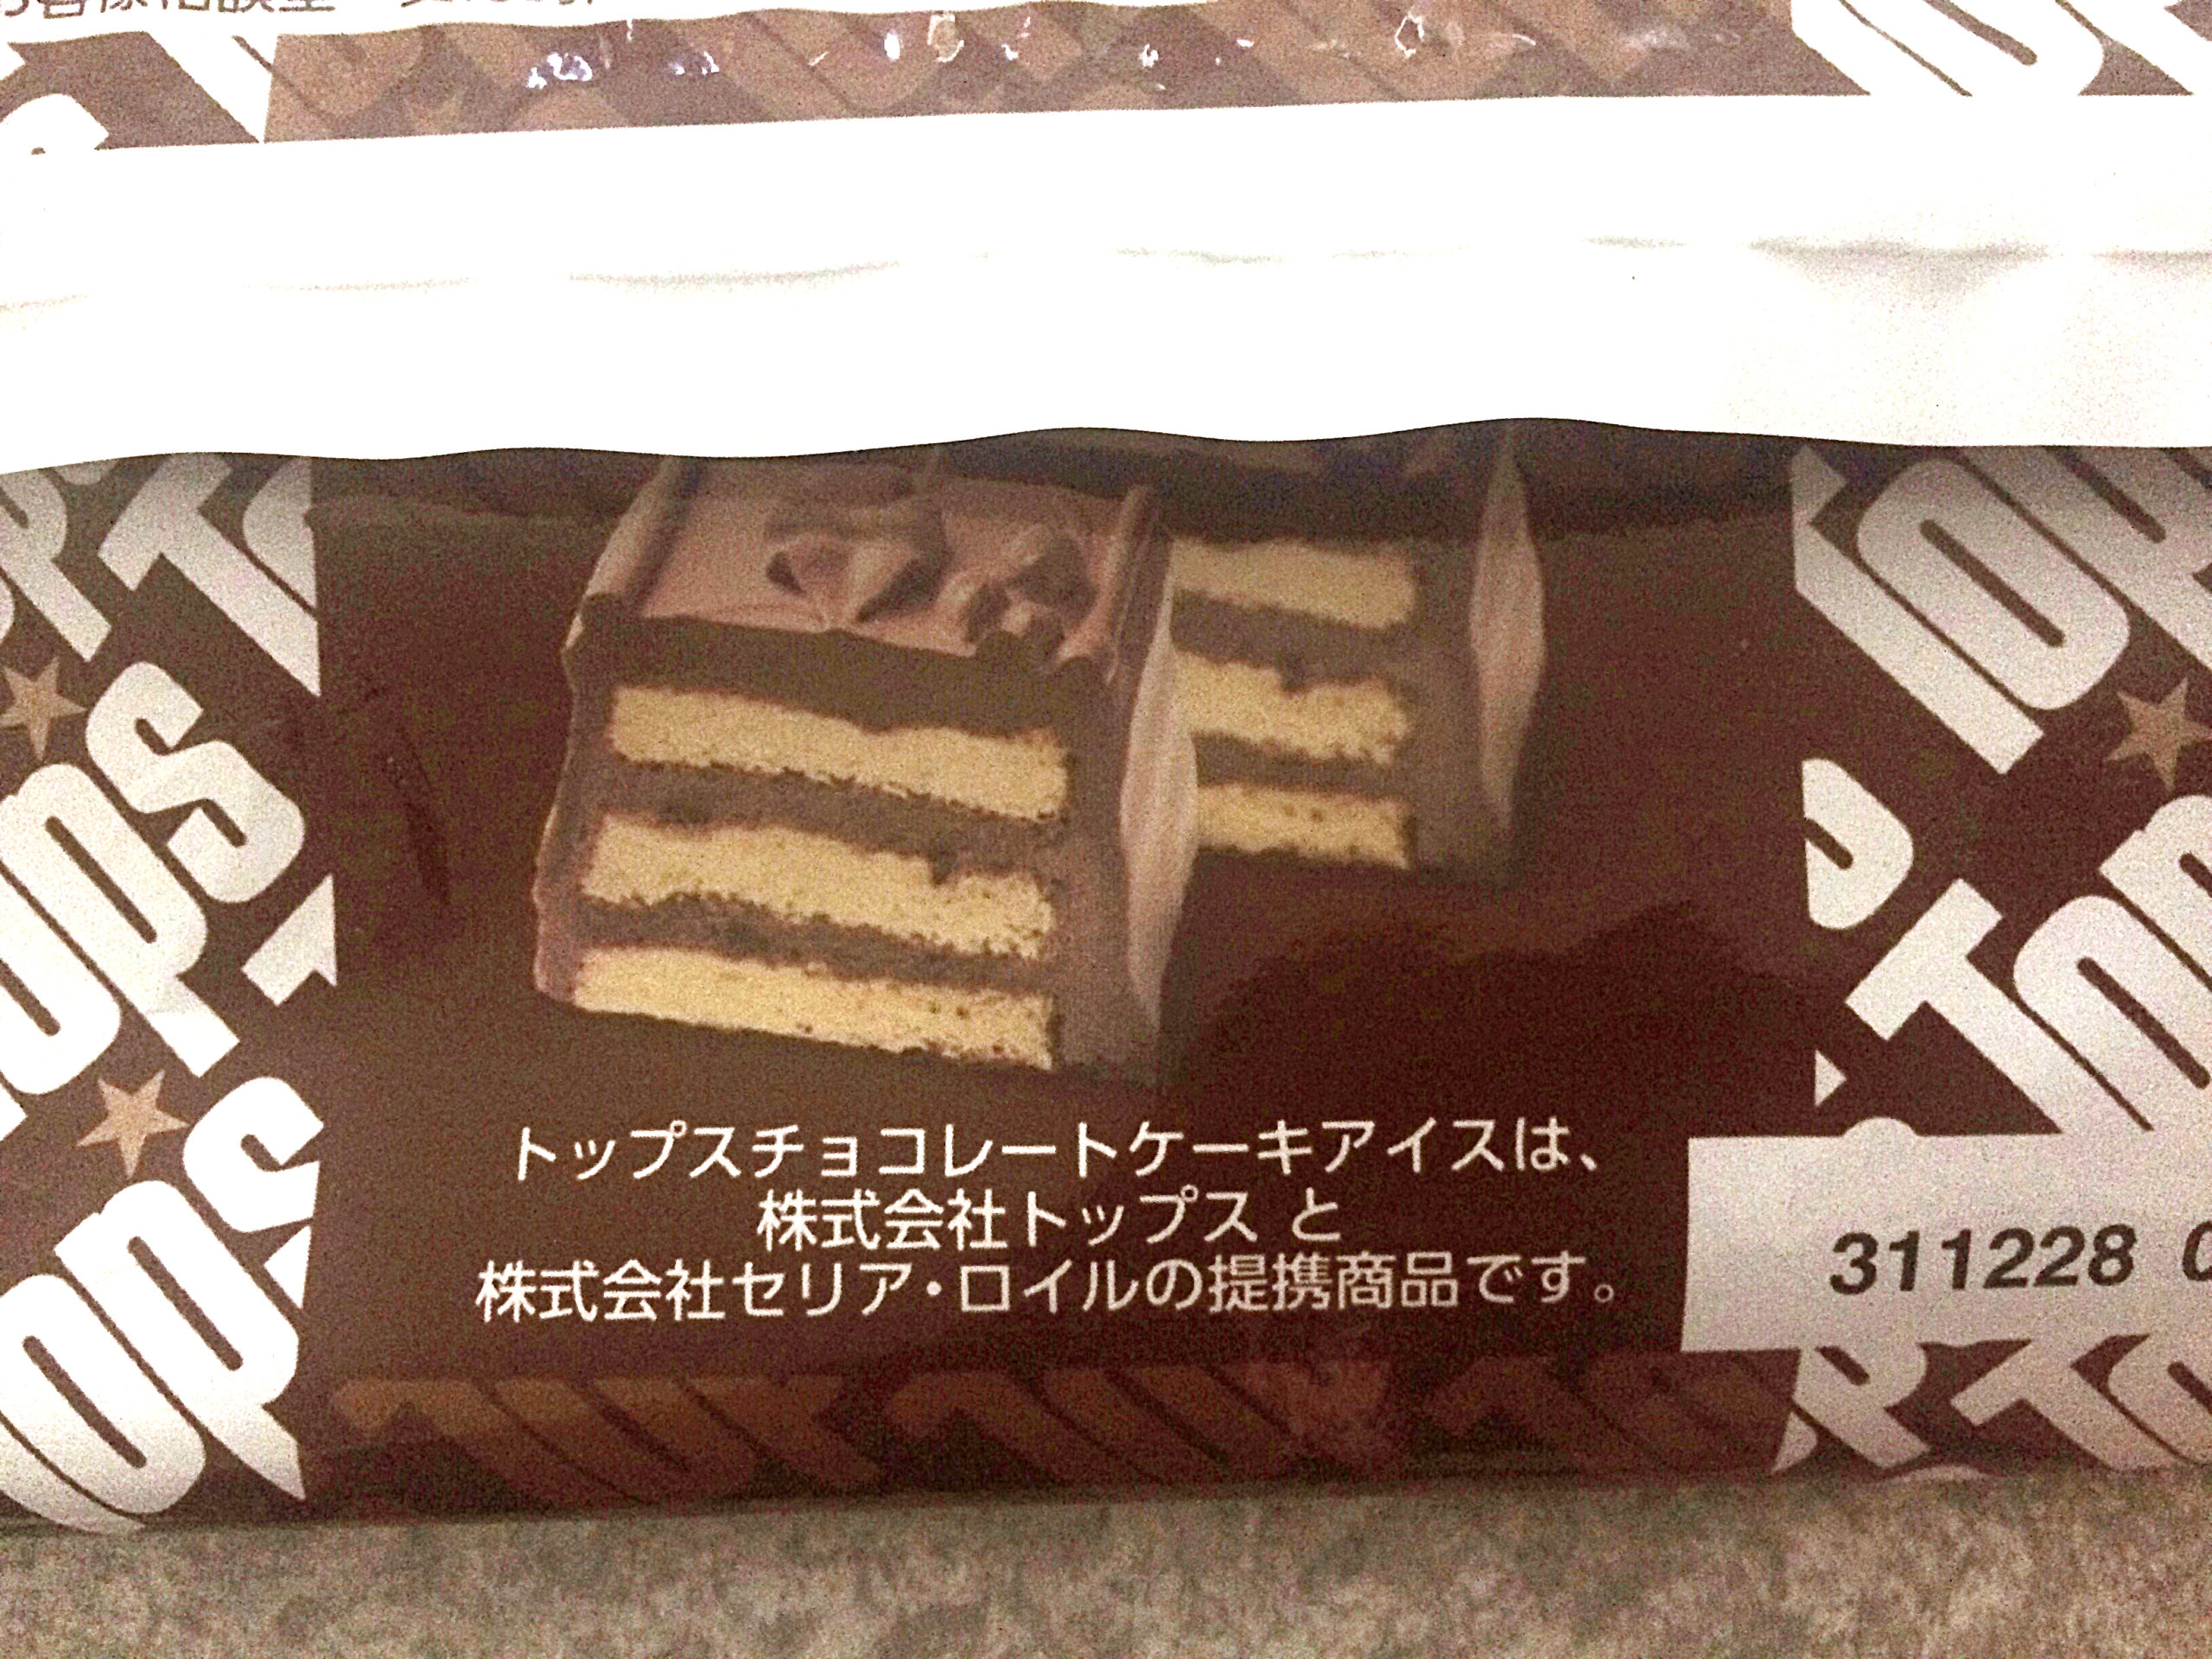 セリア ロイル トップス チョコレートケーキカップアイス Nyainの新商品